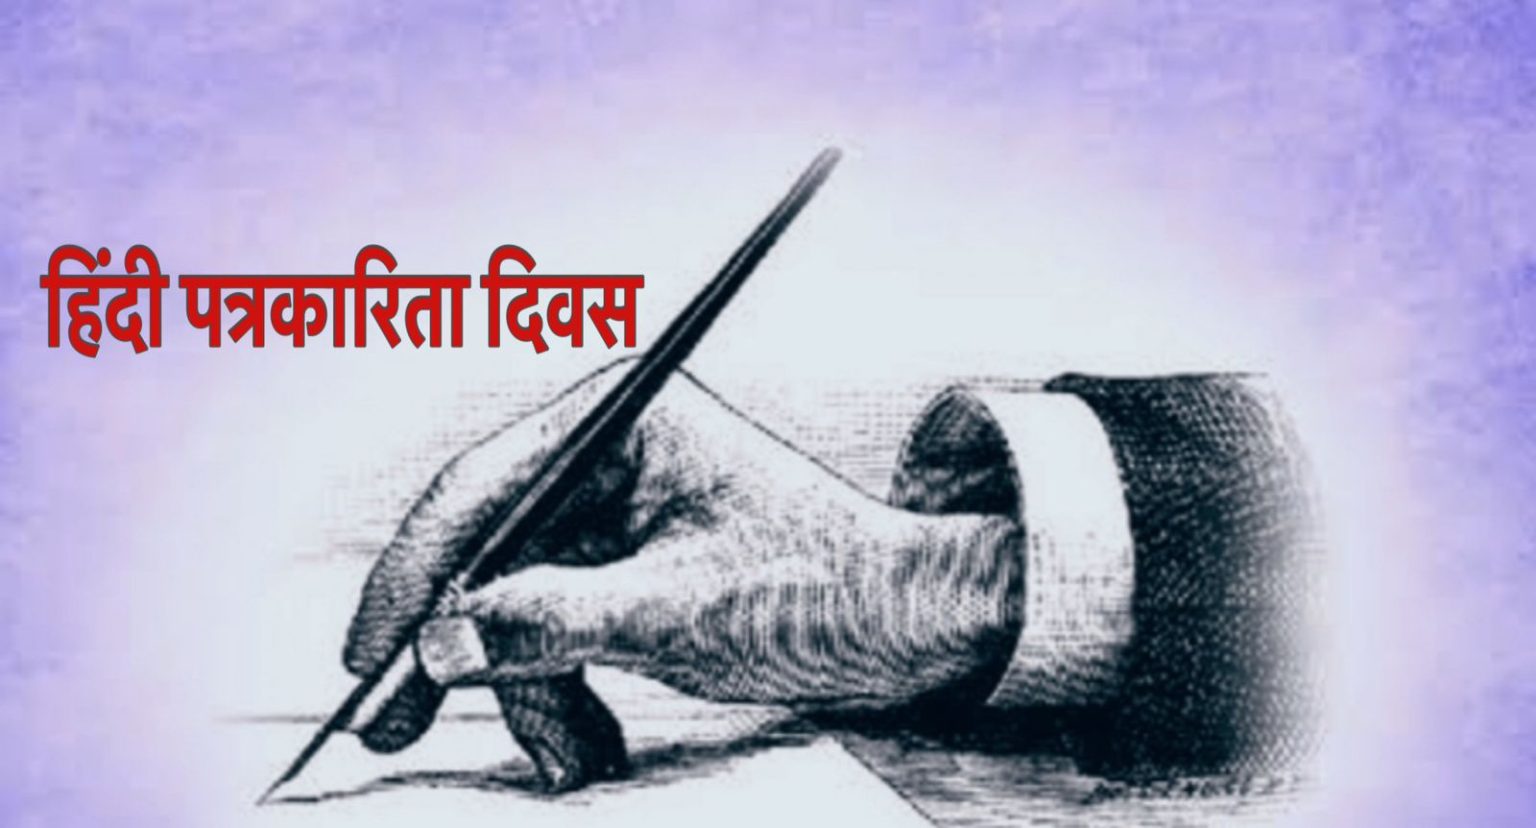 हिंदी पत्रकारिता दिवस : दो शताब्दी बाद कैसी है मौजूदा तस्वीर, नए समय के संकट और चुनौतियां